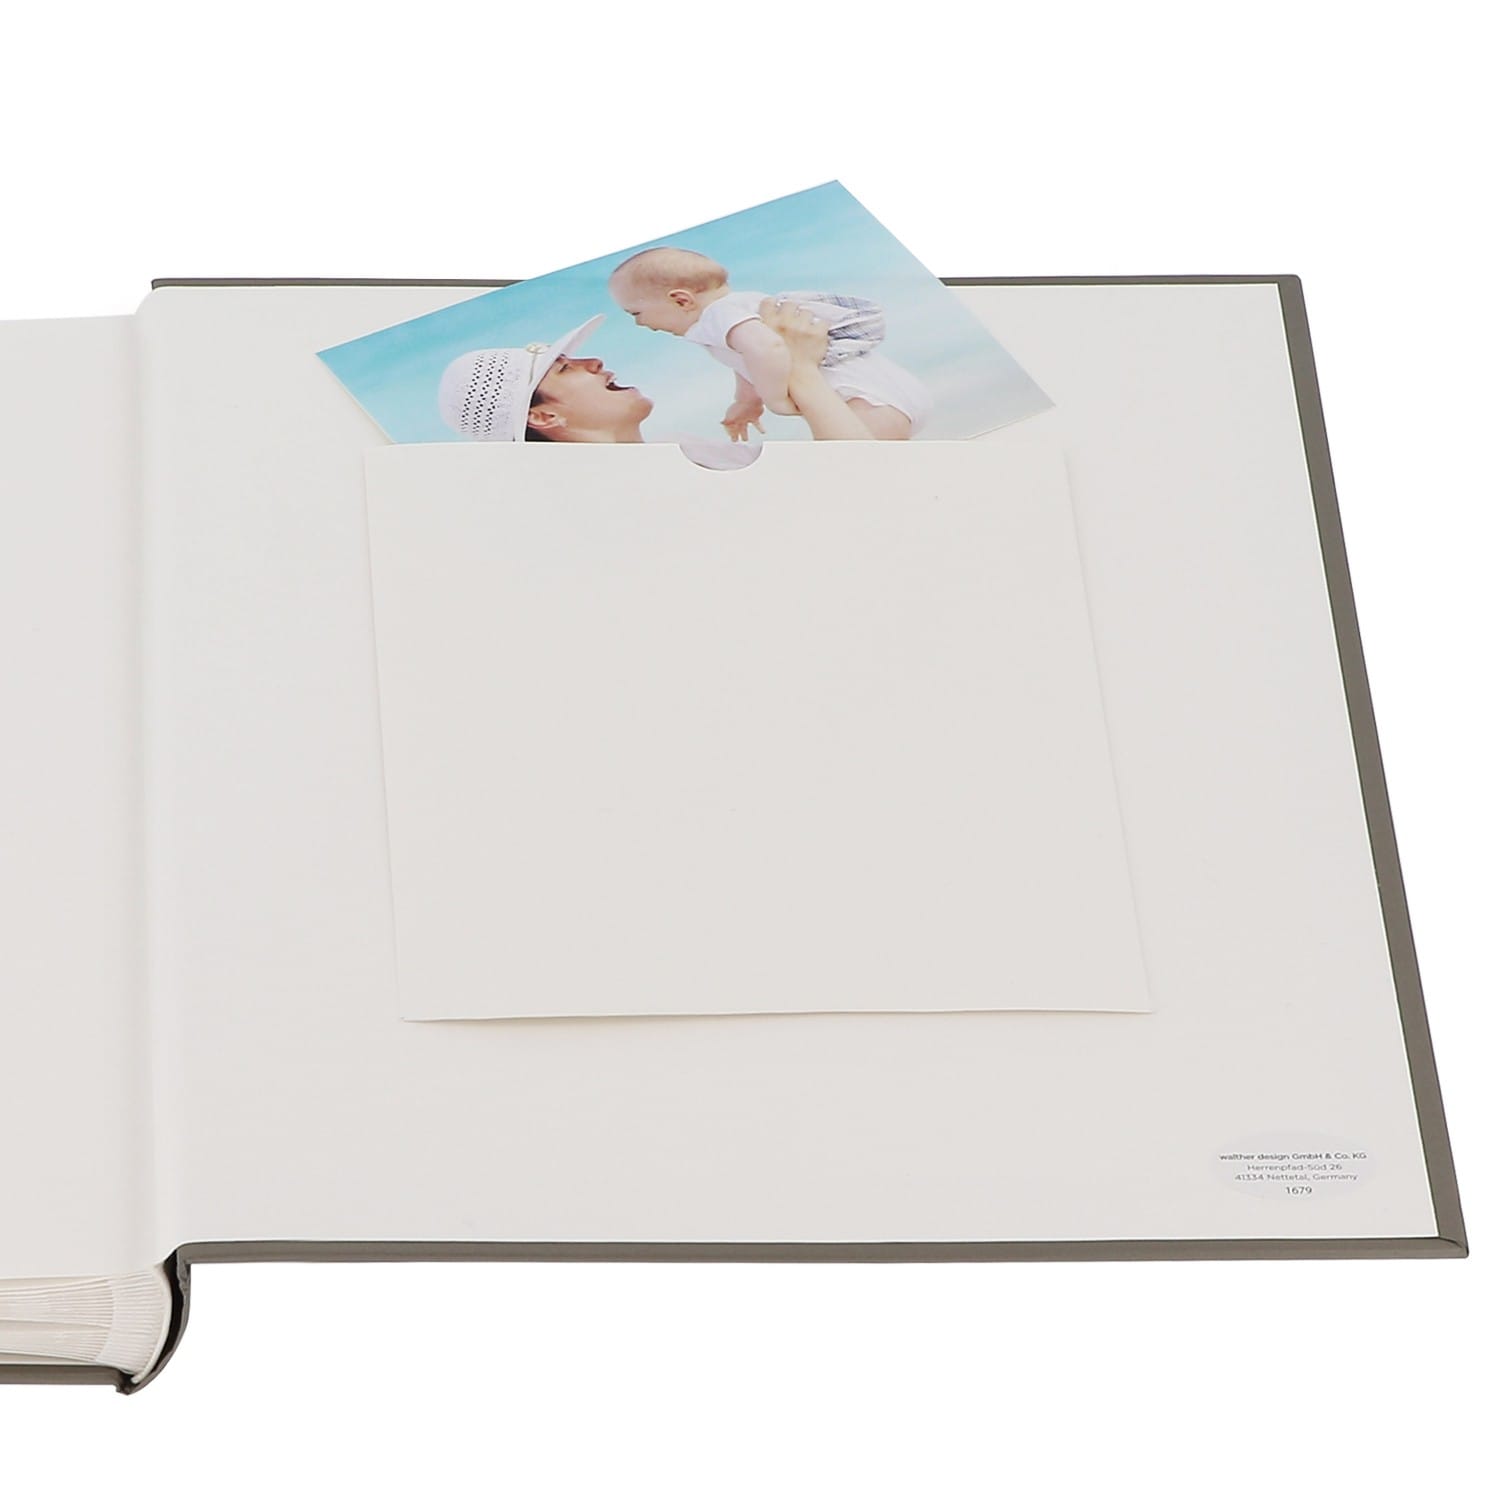 Album photo GOLDBUCH traditionnel Naissance LITTLE DREAM - 60 pages  blanches + feuillets cristal - 240 photos - Couverture Nuages 30x31cm +  fenêtre